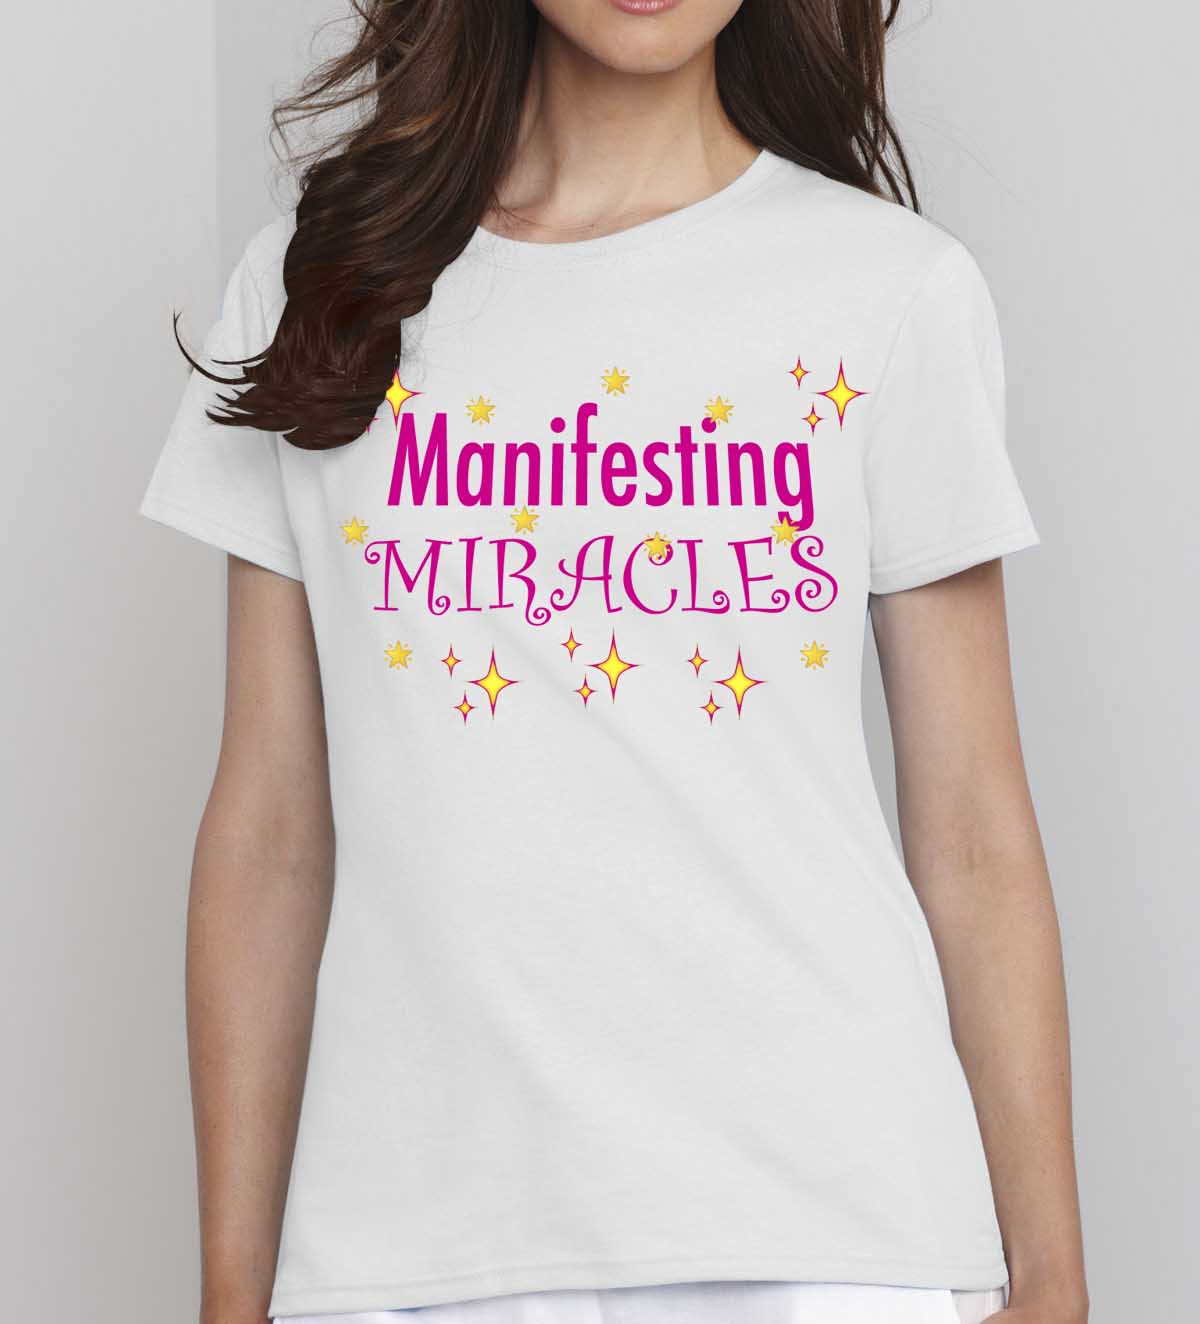 MANIFESTING MIRACLES - Unisex Short Sleeve 100% Cotton Jersey T-Shirt - FabulousLife